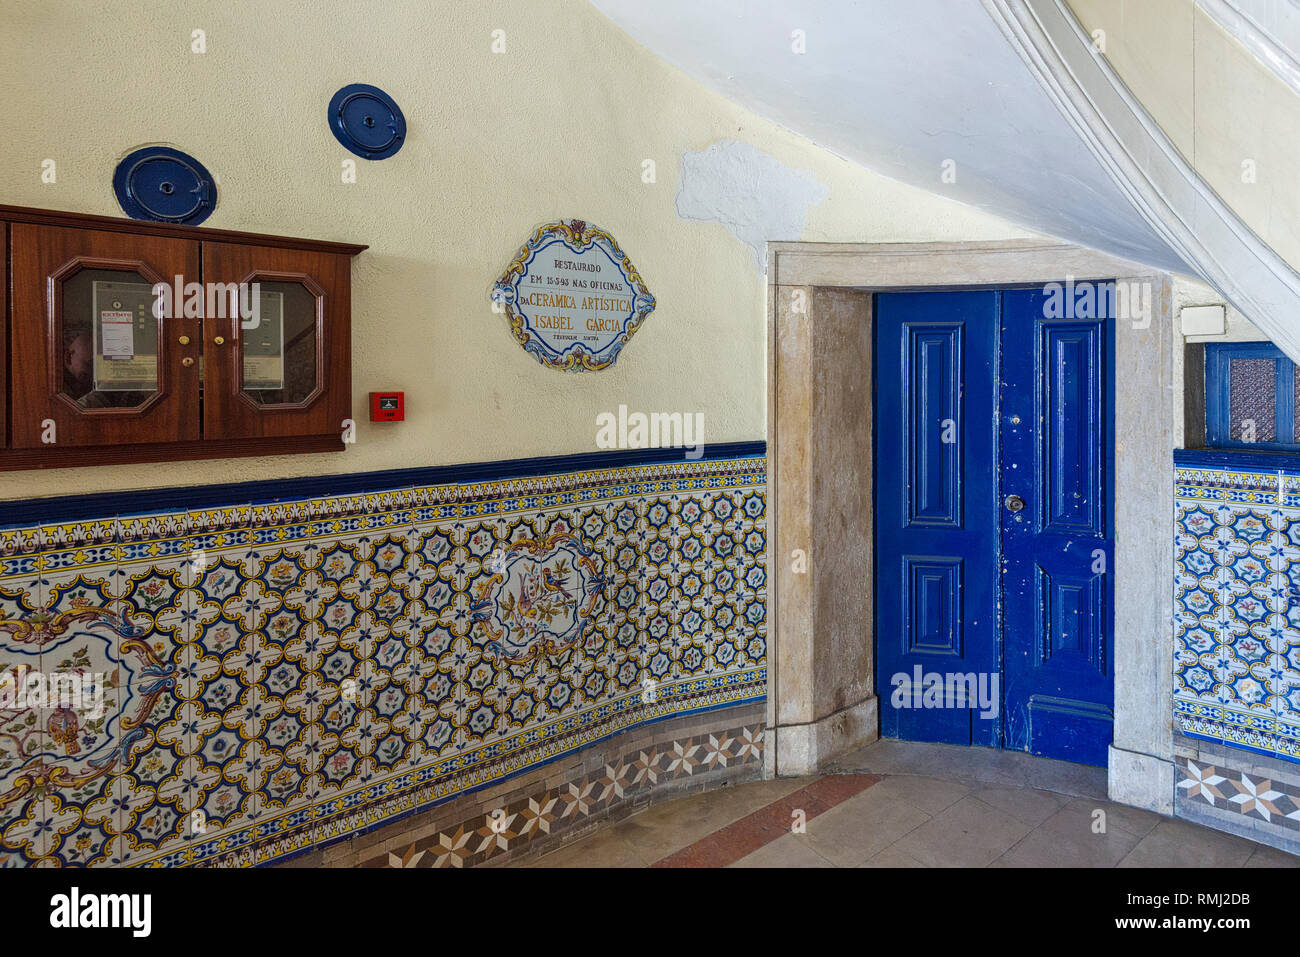 Pannelli azulejo all' entrata di una pensione di vecchiaia in quartiere Belem, Lisbona, Portogallo Foto Stock